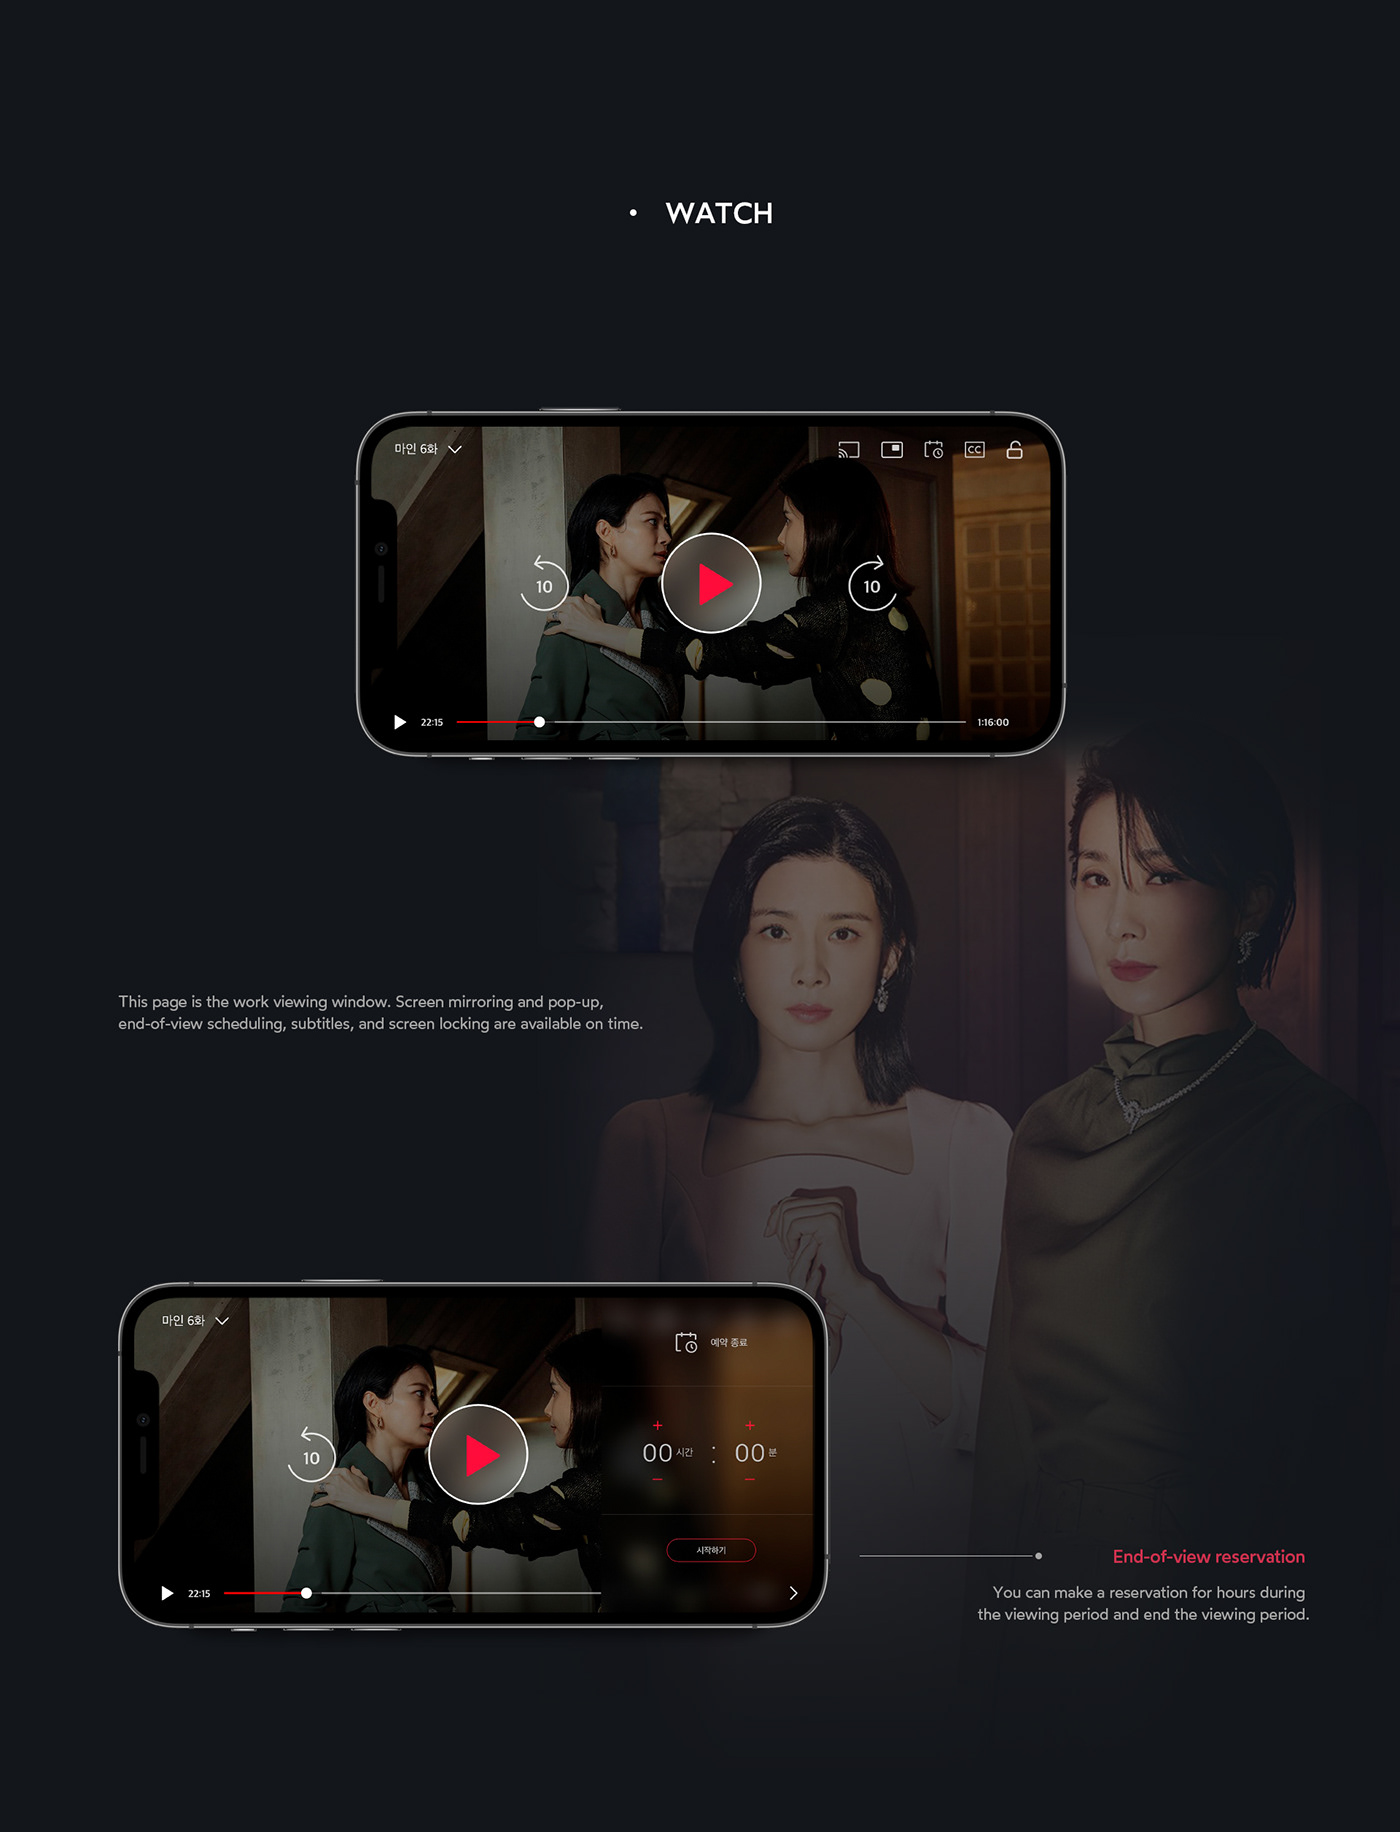 cj drama hulu interaction movie Netflix Streaming uxui video Watcha